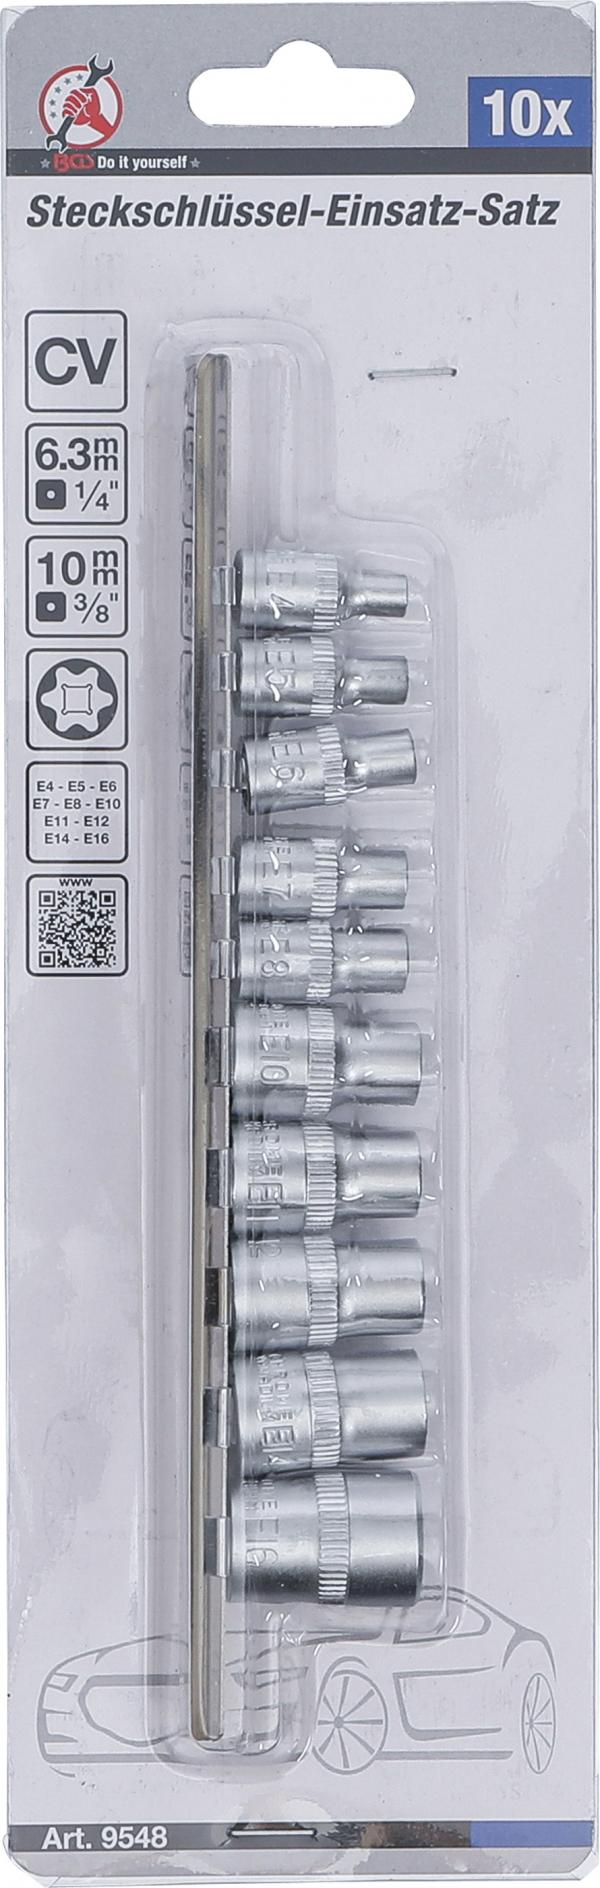 Steckschlüssel-Einsatz-Satz E-Profil | Antrieb Innenvierkant 6,3 mm (1/4") / 10 mm (3/8") | SW E4 - E16 | 10-tlg.